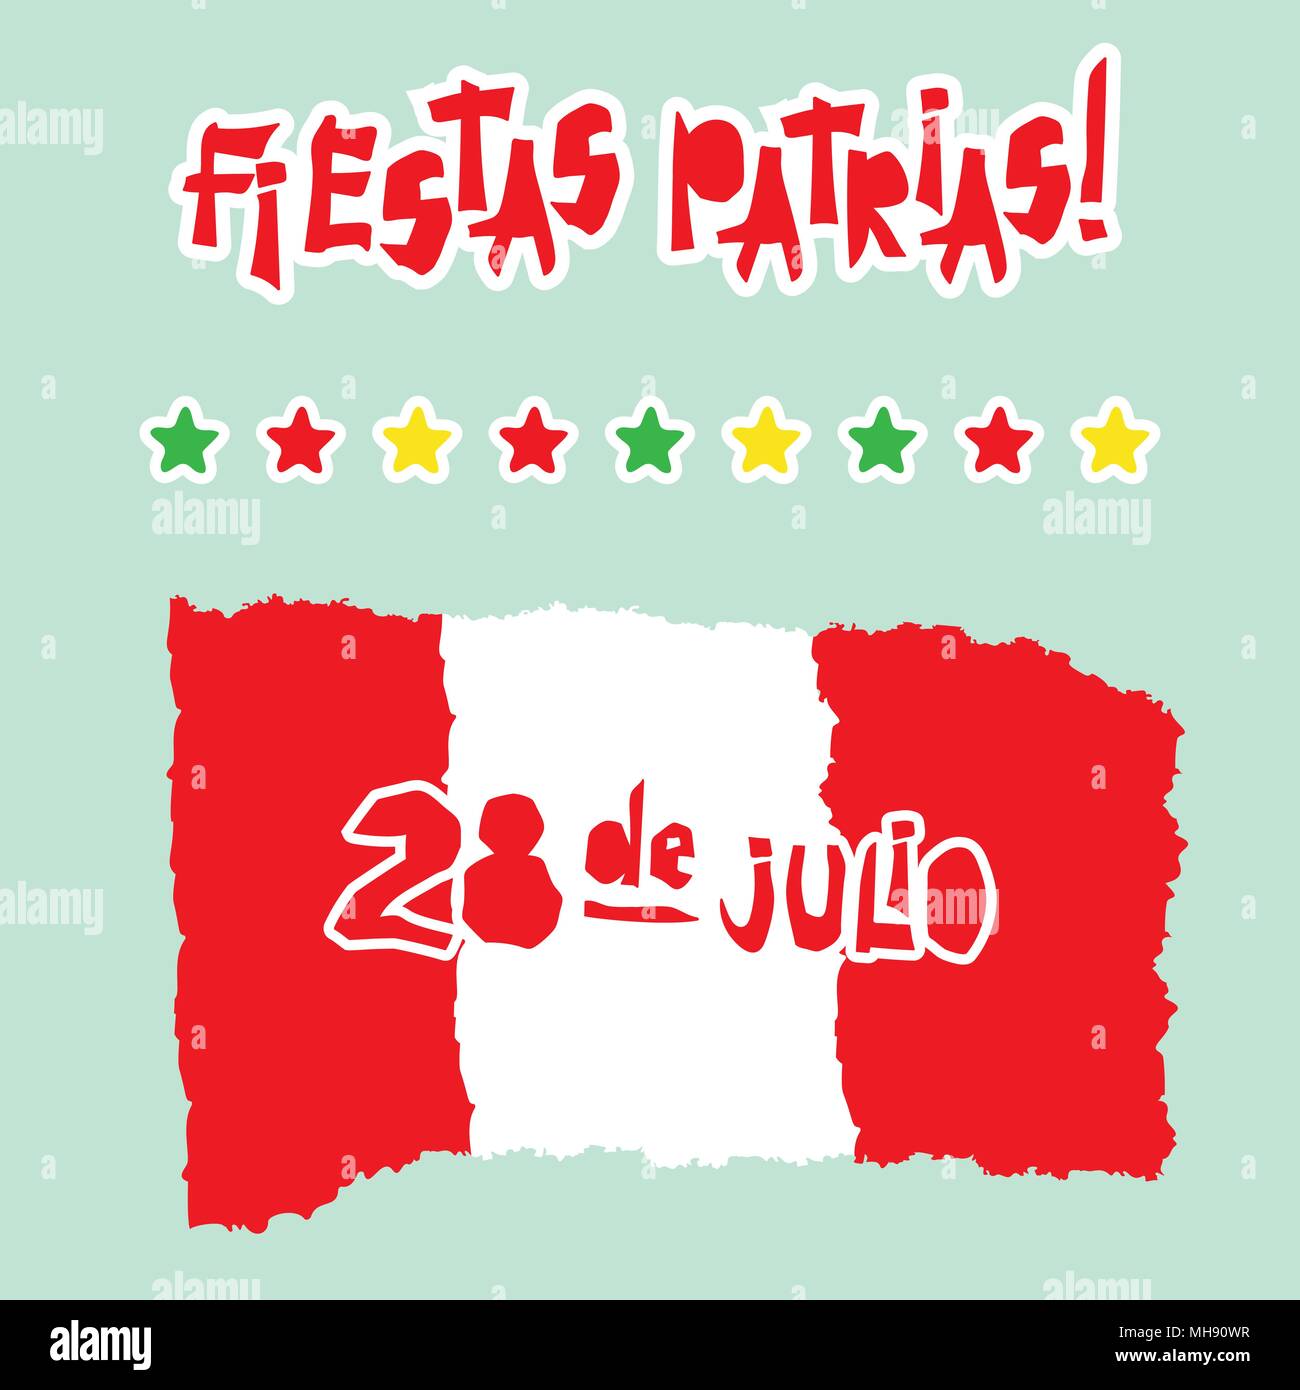 Flat Fiestas Patrias Design Card With Text Fiestas Patrias In Peru